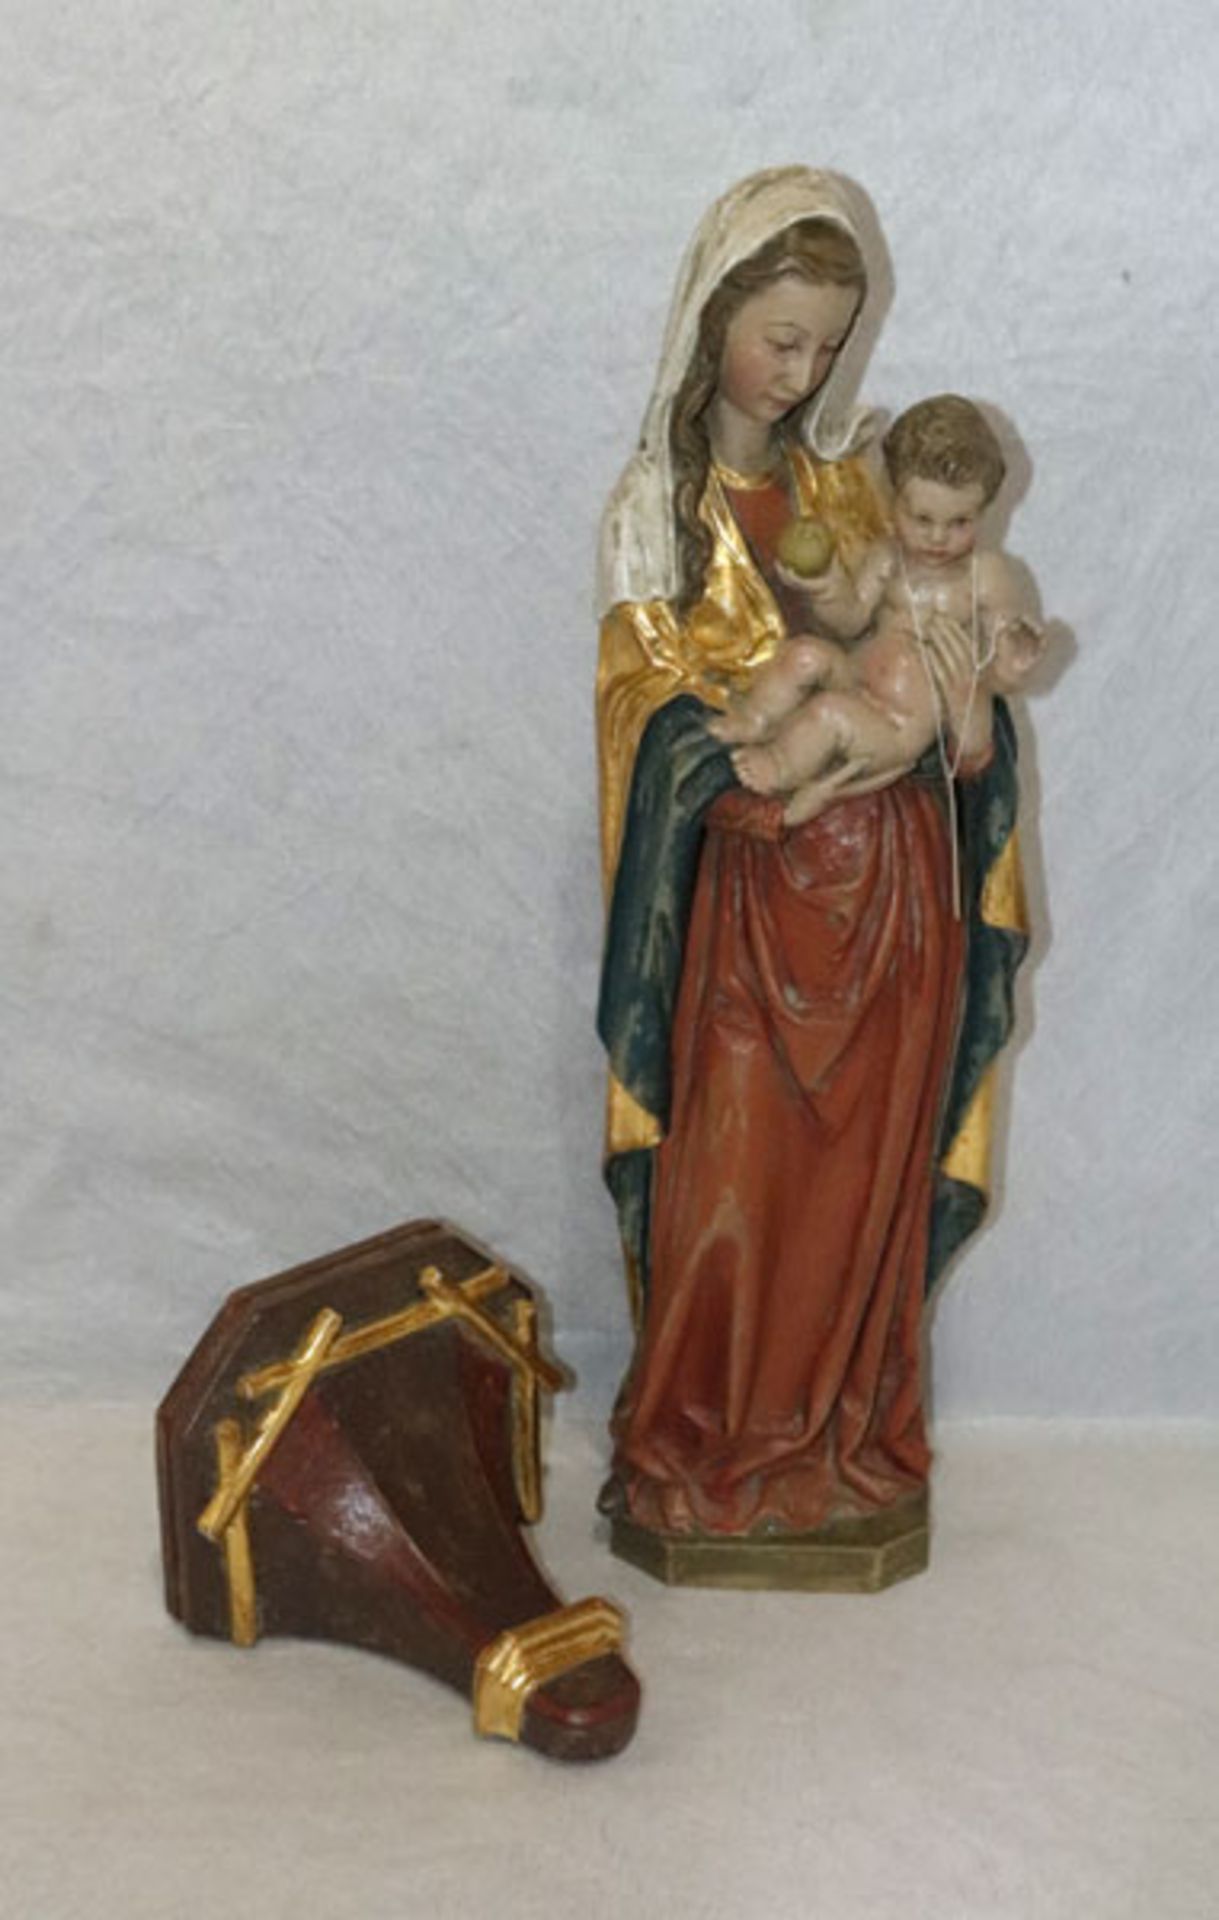 Holz Figurenskulptur 'Maria mit Kind', farbig gefaßt, rückseitig signiert D. Neu, H 51 cm, B 13